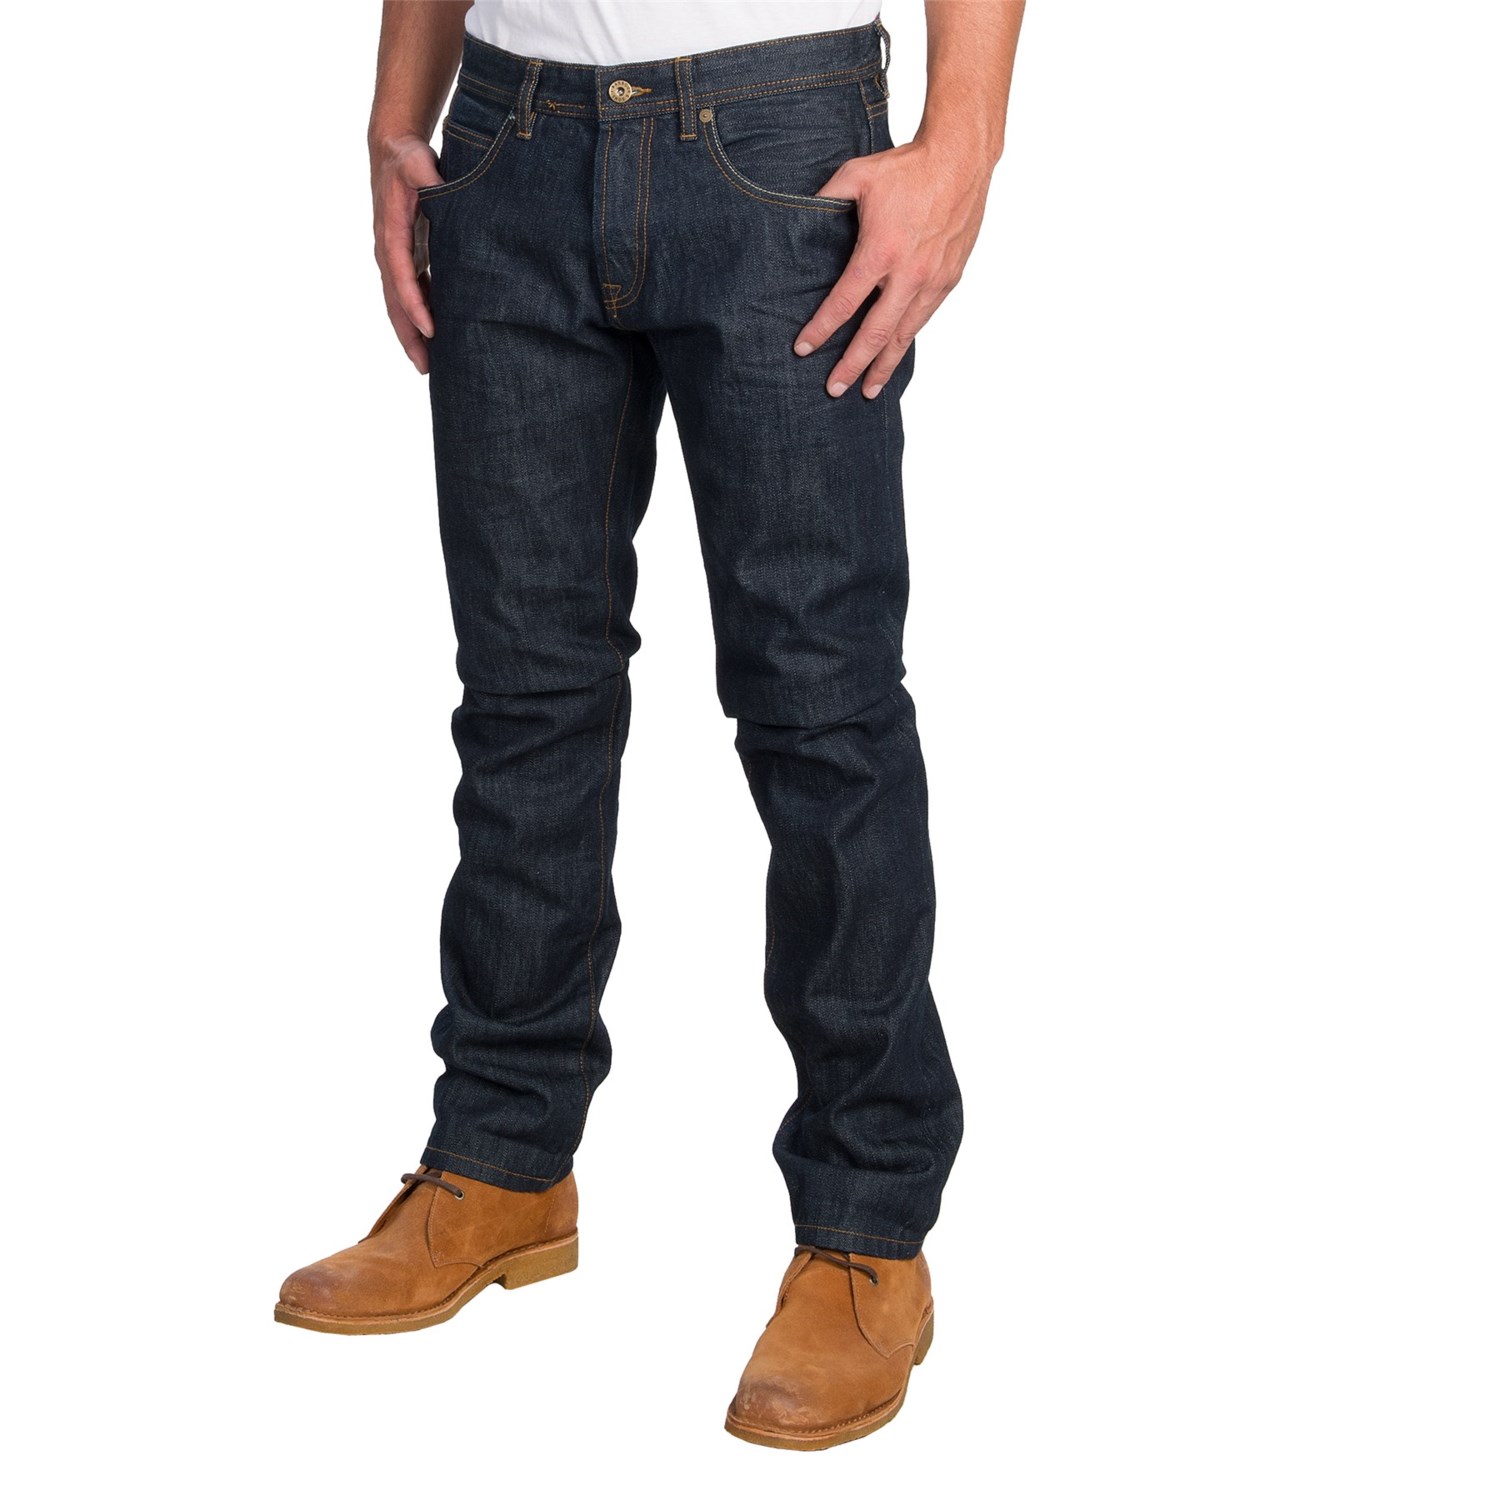 Barbour International Steve McQueen Jeans (For Men) 8859K - Save 60%